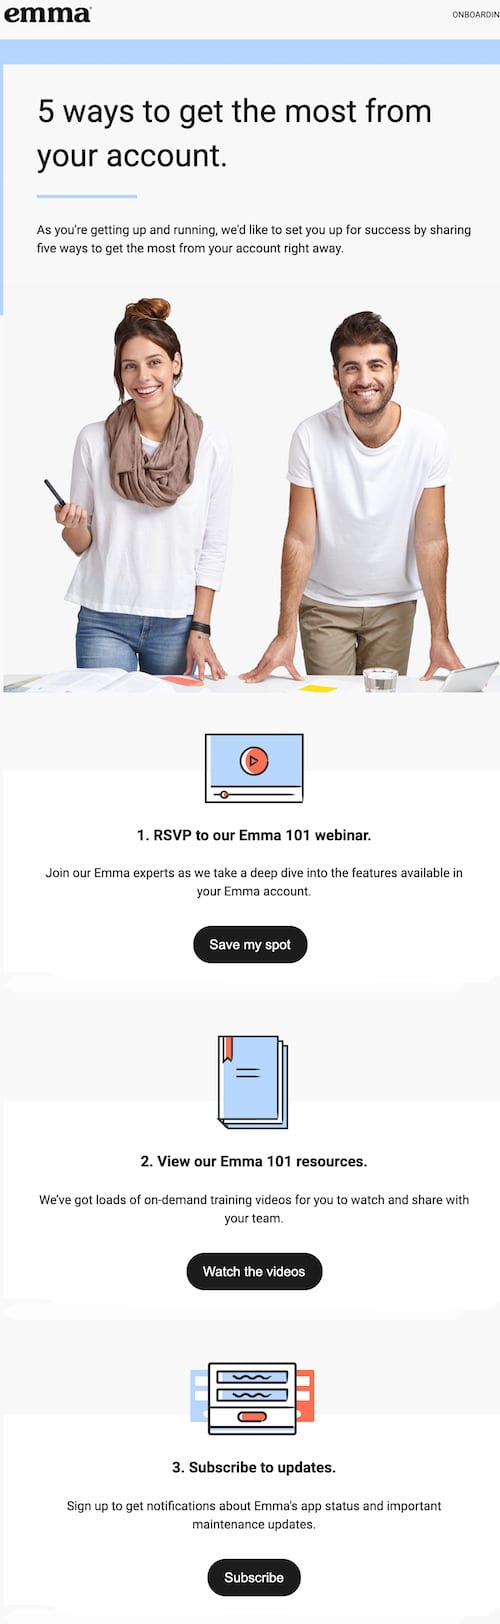 içerik tabanlı e-posta örneği: İşte Emma'nın içerik tabanlı otomatik e-postasına bir örnek.